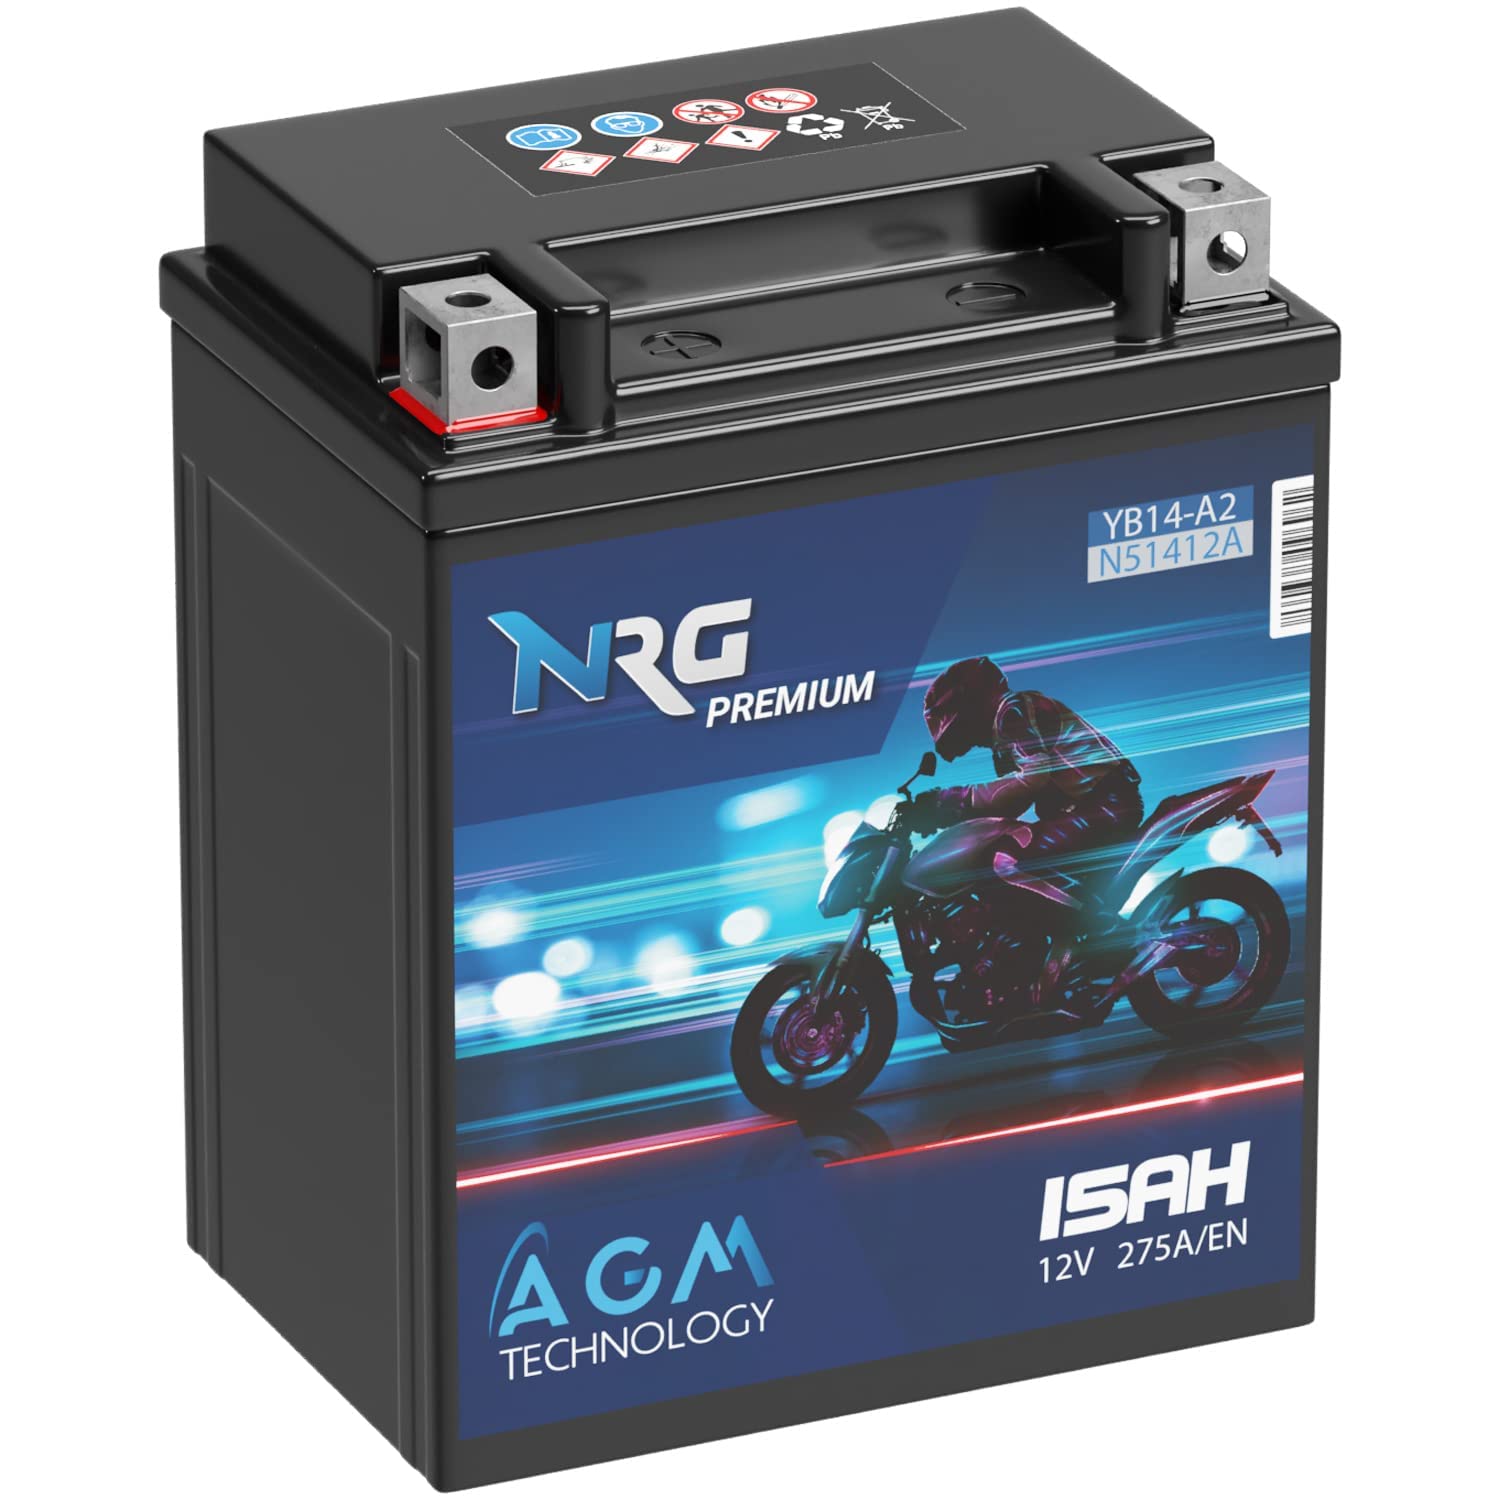 NRG Premium YB14-A2 AGM Motorradbatterie 15Ah 12V 275A/EN Batterie 51412 CB14-A2 FB14-A2 6Y4P auslaufsicher wartungsfrei ersetzt 14Ah von NRG PREMIUM